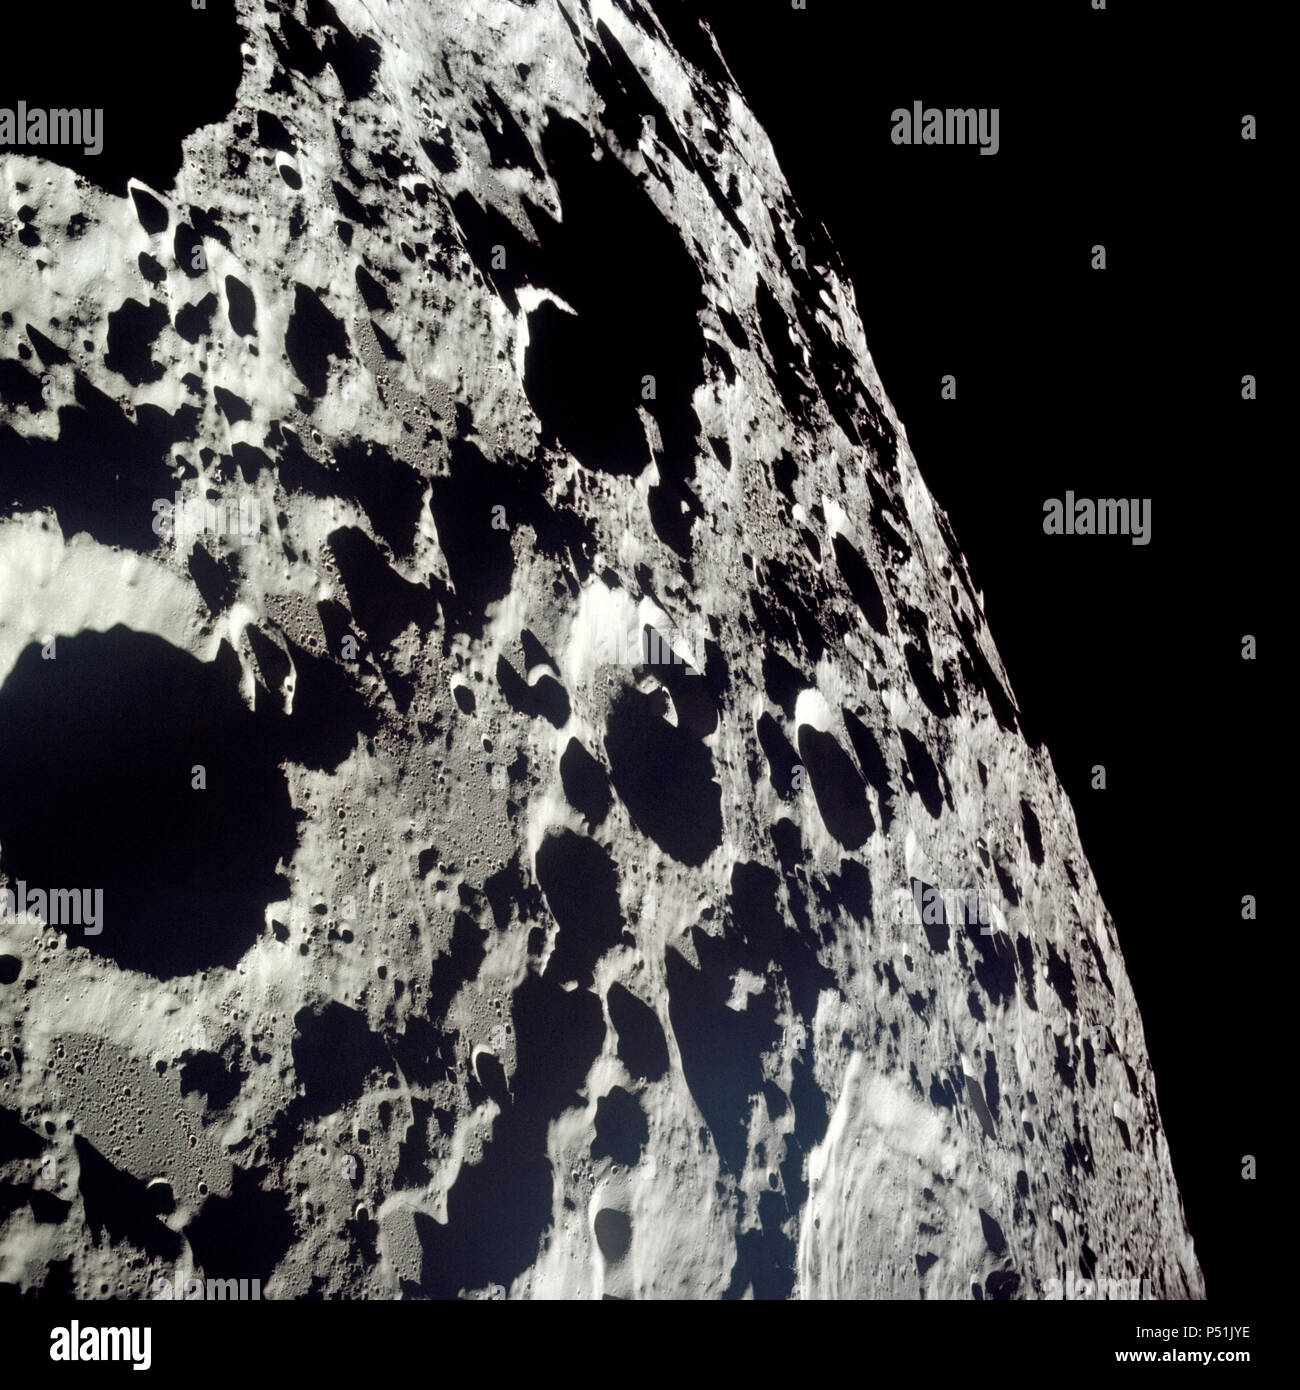 Il terreno accidentato in questa fotografia è tipico del farside della luna. Lunare questa foto è stata scattata da Apollo 11 veicolo spaziale durante l'atterraggio lunare di missione. Foto Stock